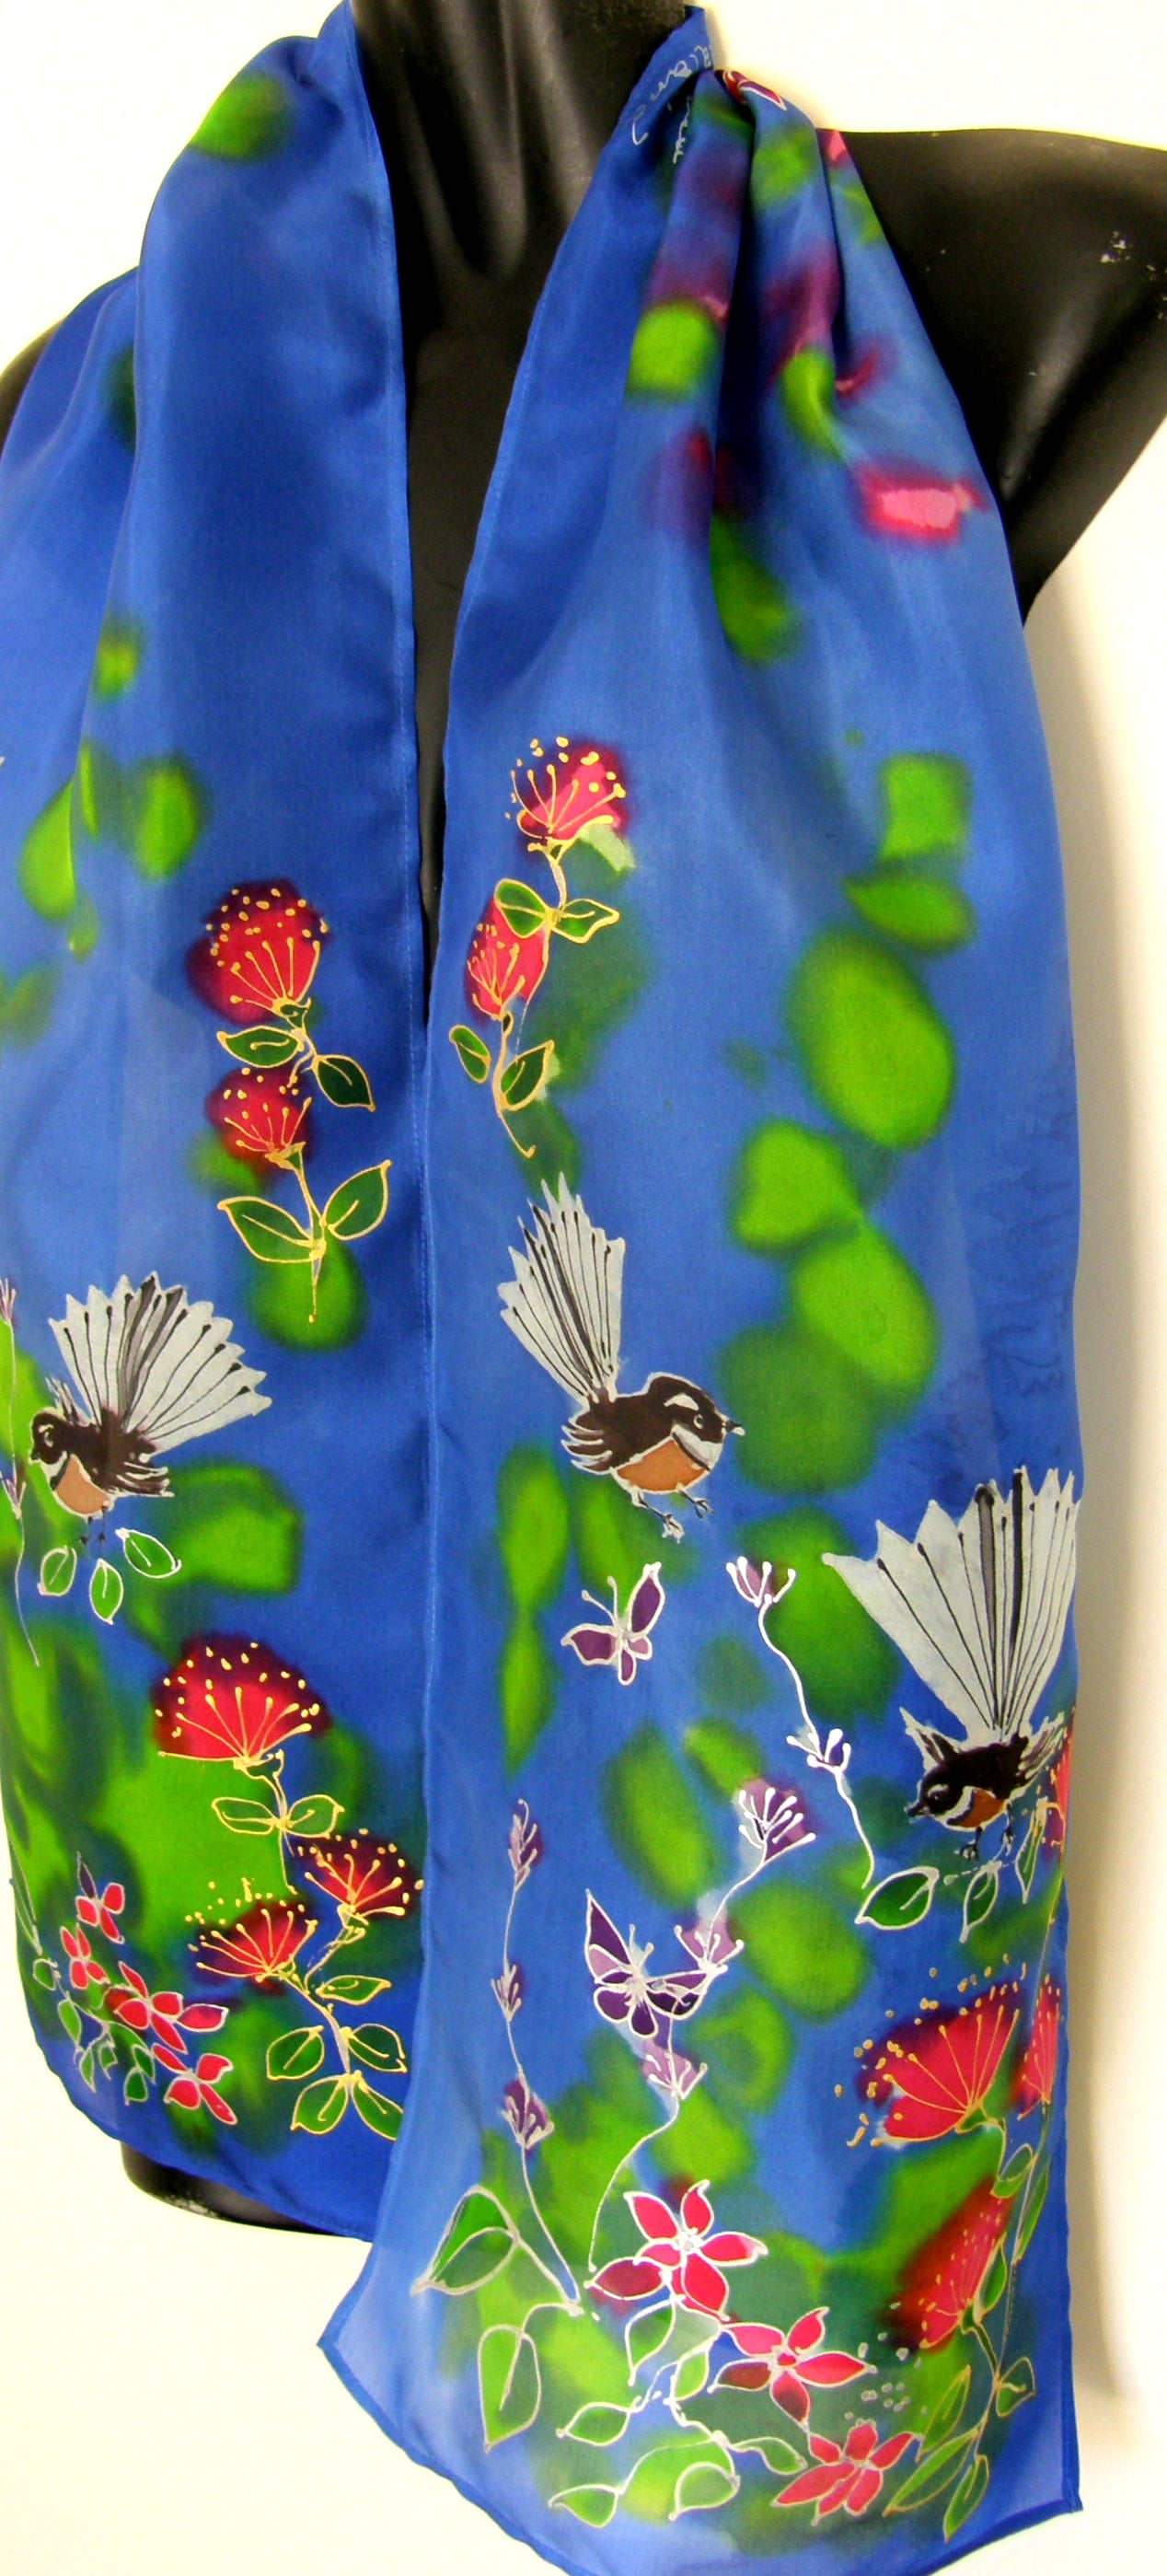 Fantail Garden - Hand painted Silk Scarf - Satherley Silks NZ